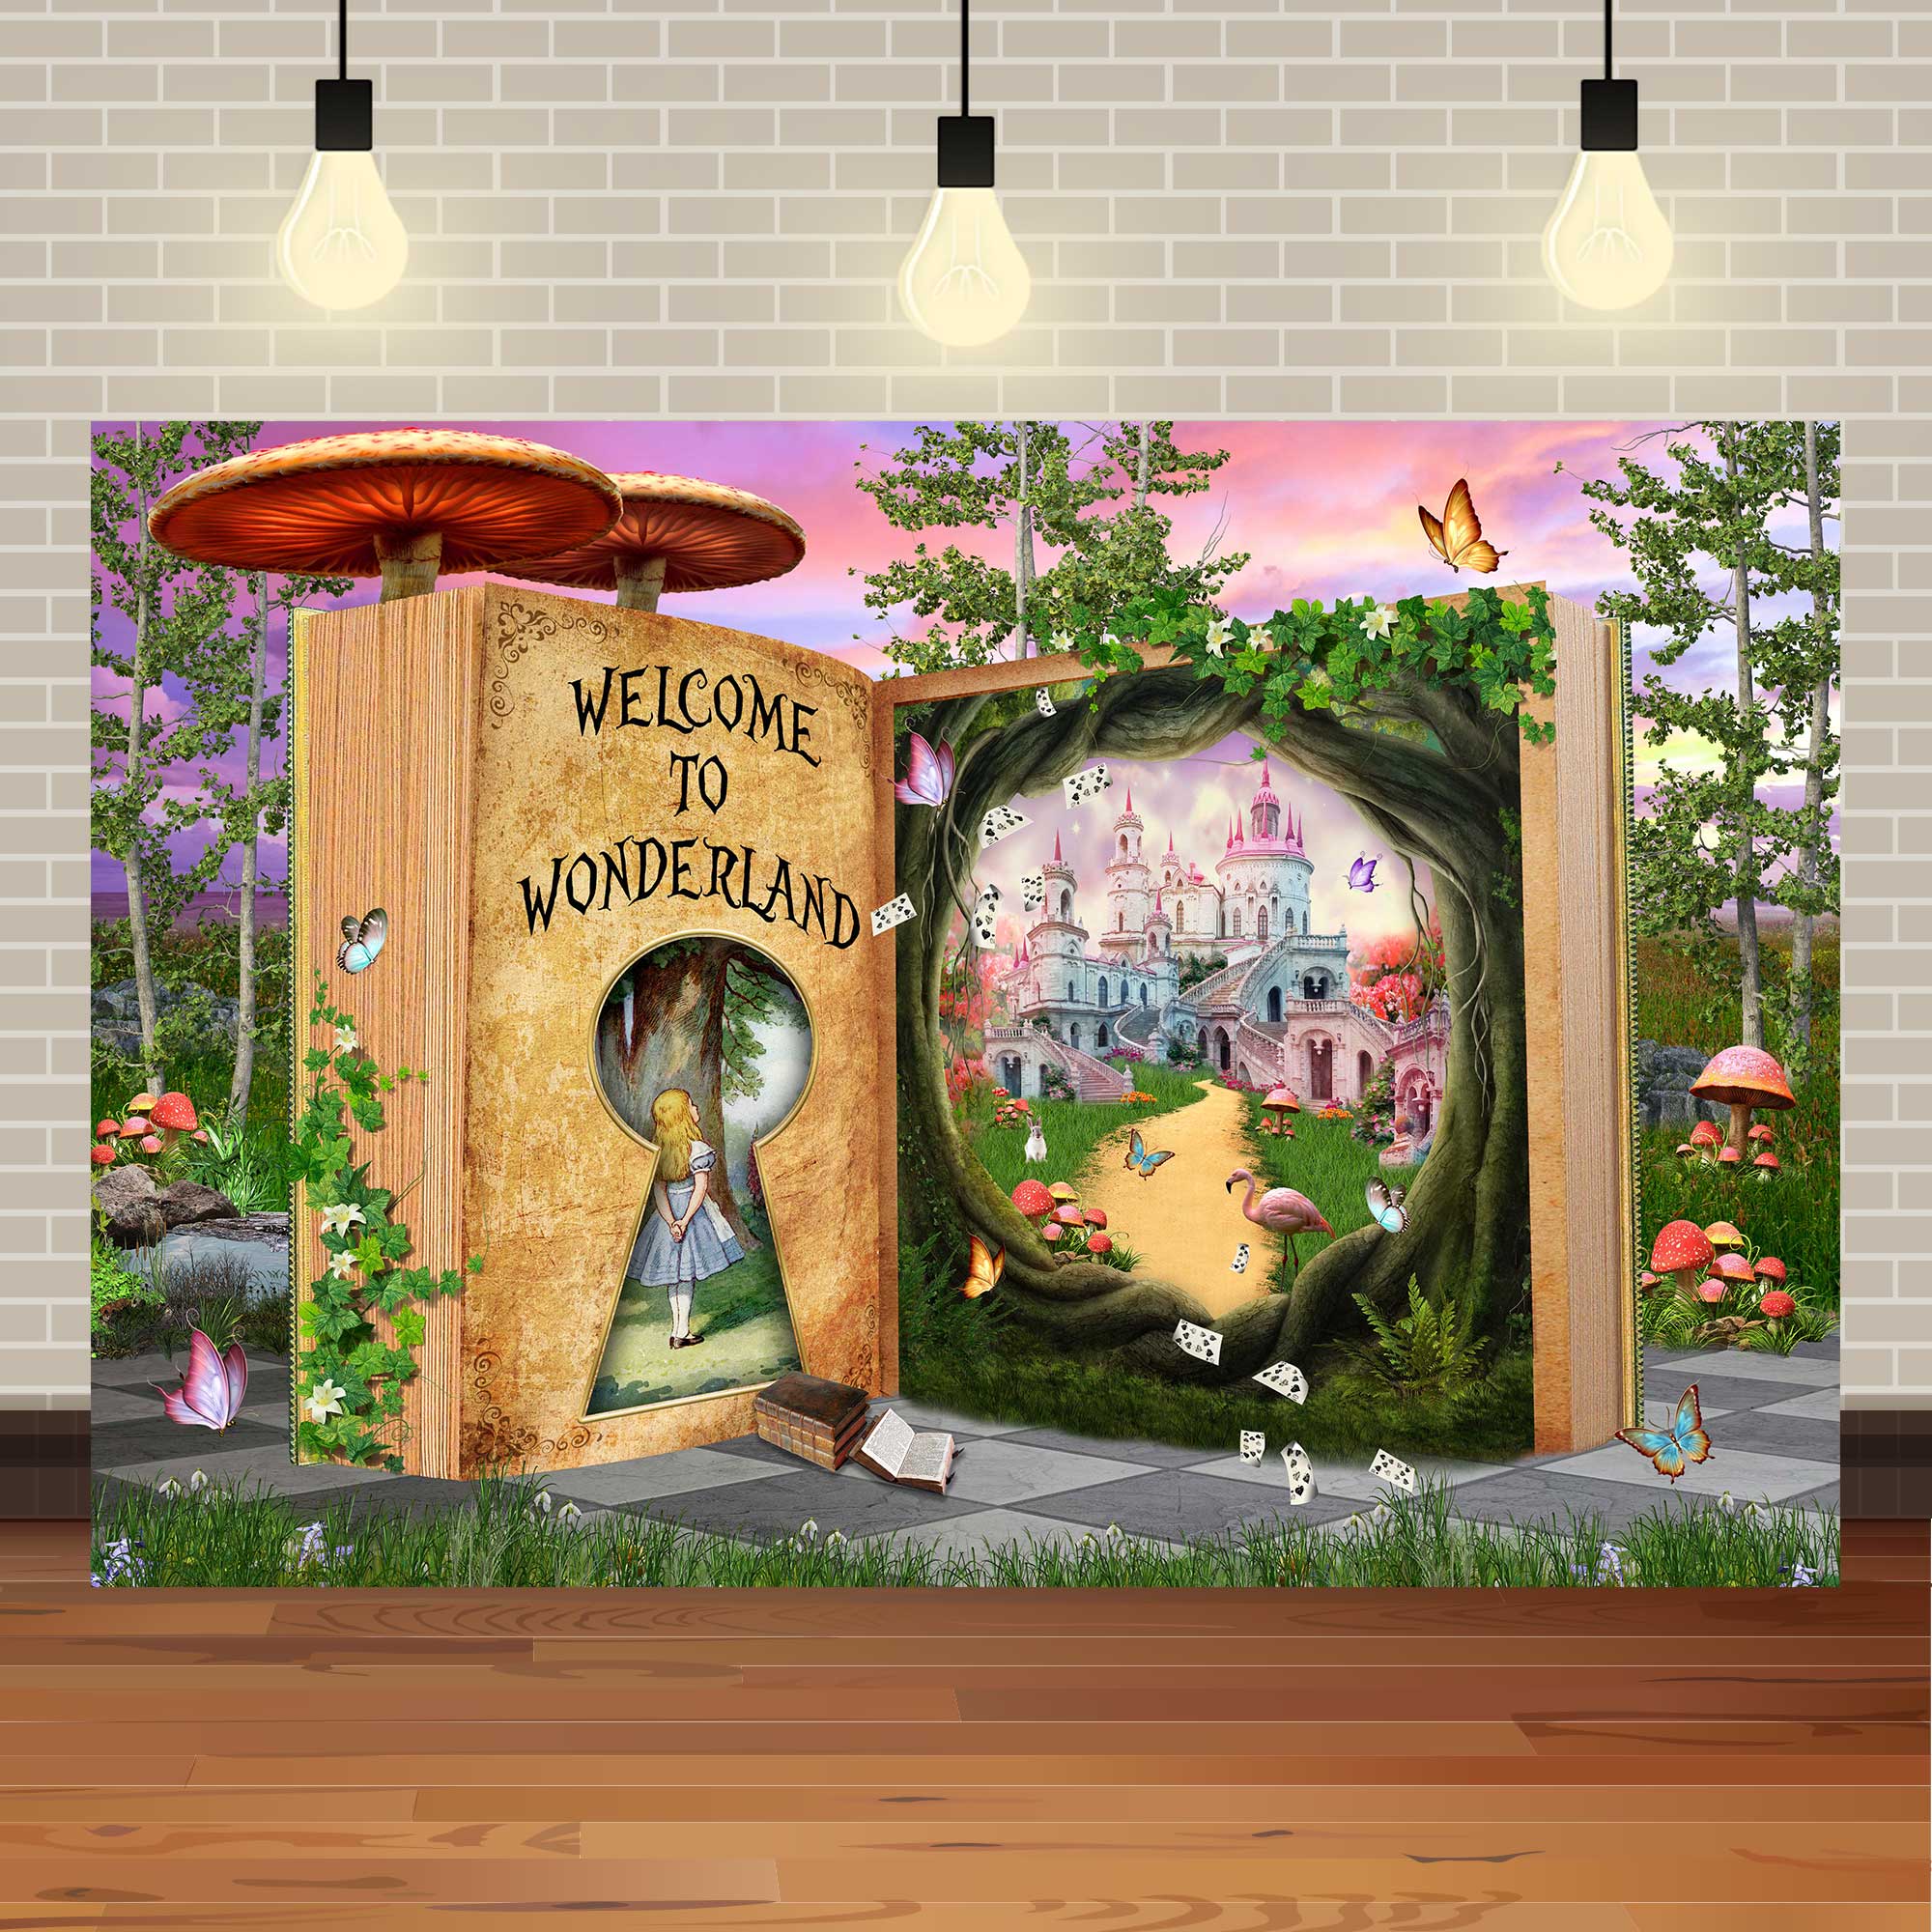 爱丽丝的秘密花园卡通魔法森林主题女孩童话生日kt板场景拍照布置